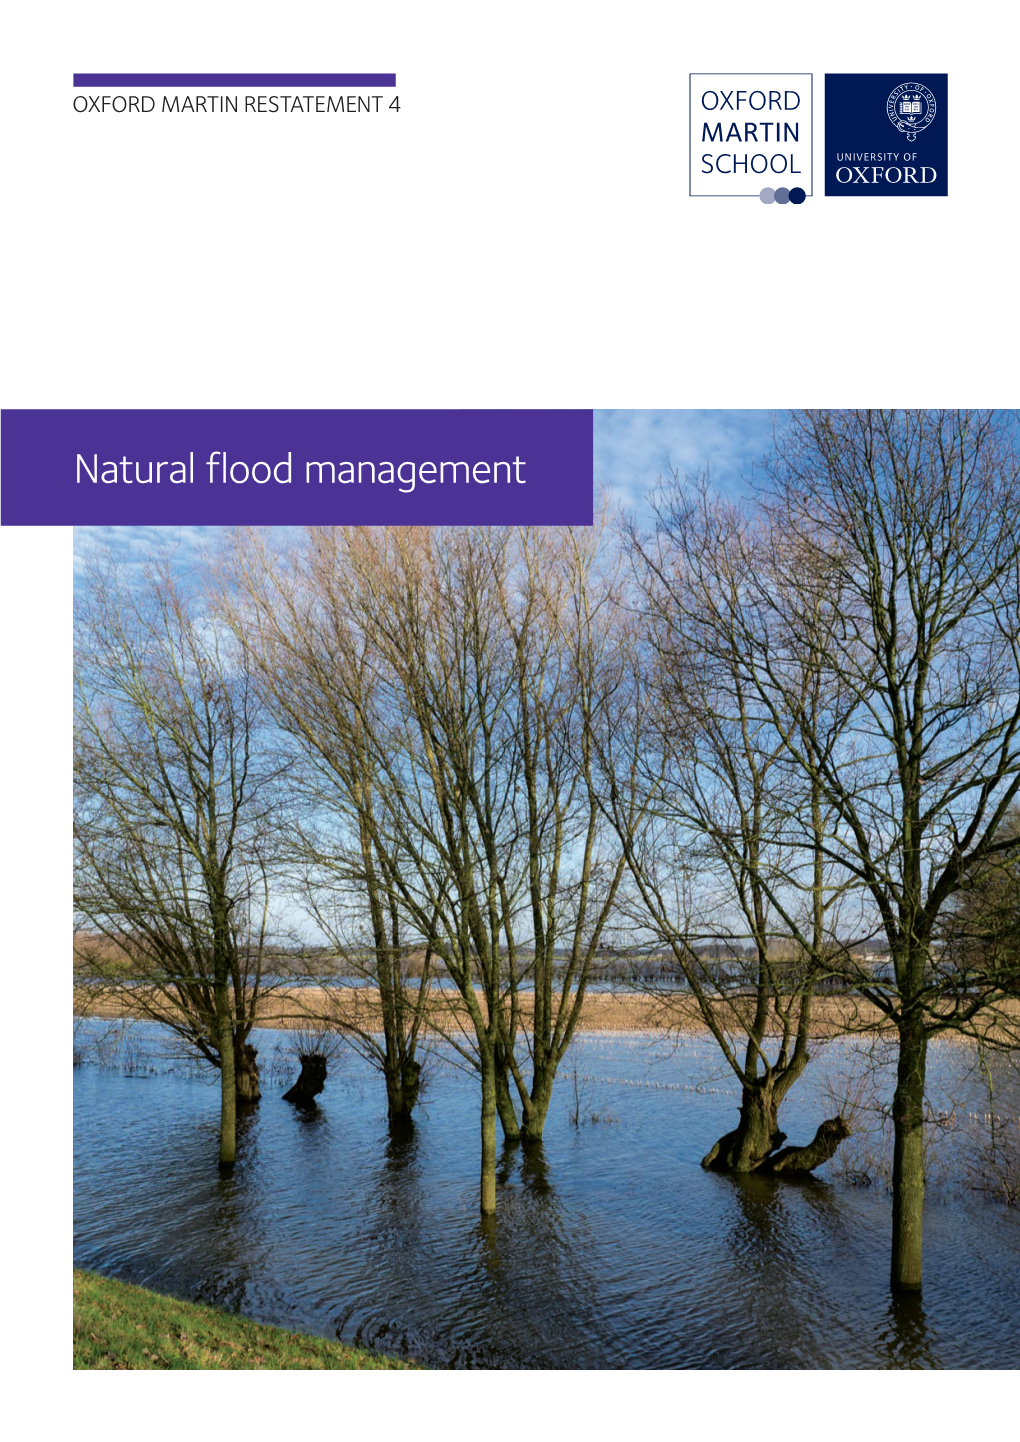 Natural Flood Management Oxford Martin Restatement 4: a Restatement of the Natural Science Evidence Concerning Catchment-Based ‘Natural’ Flood Management in the UK